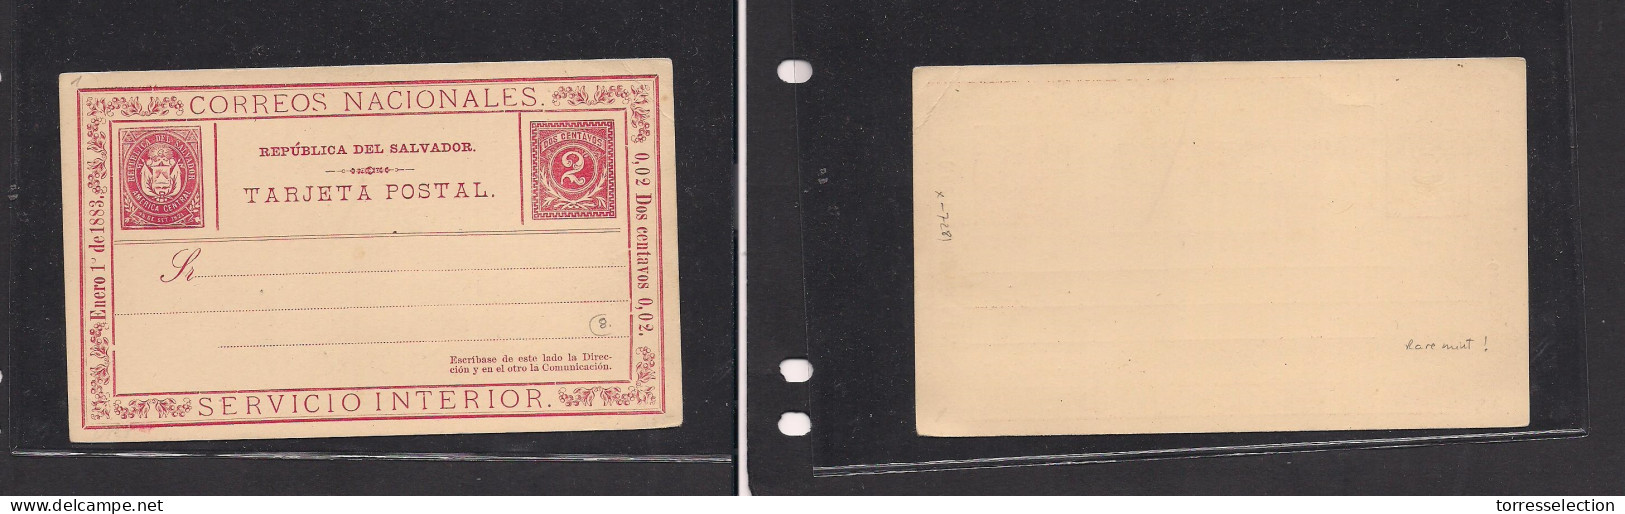 SALVADOR, EL. Salvador Cover 1883 Early Mint Stat Card 2c Red, Very Scarce So Fine. Easy Deal. XSALE. - El Salvador